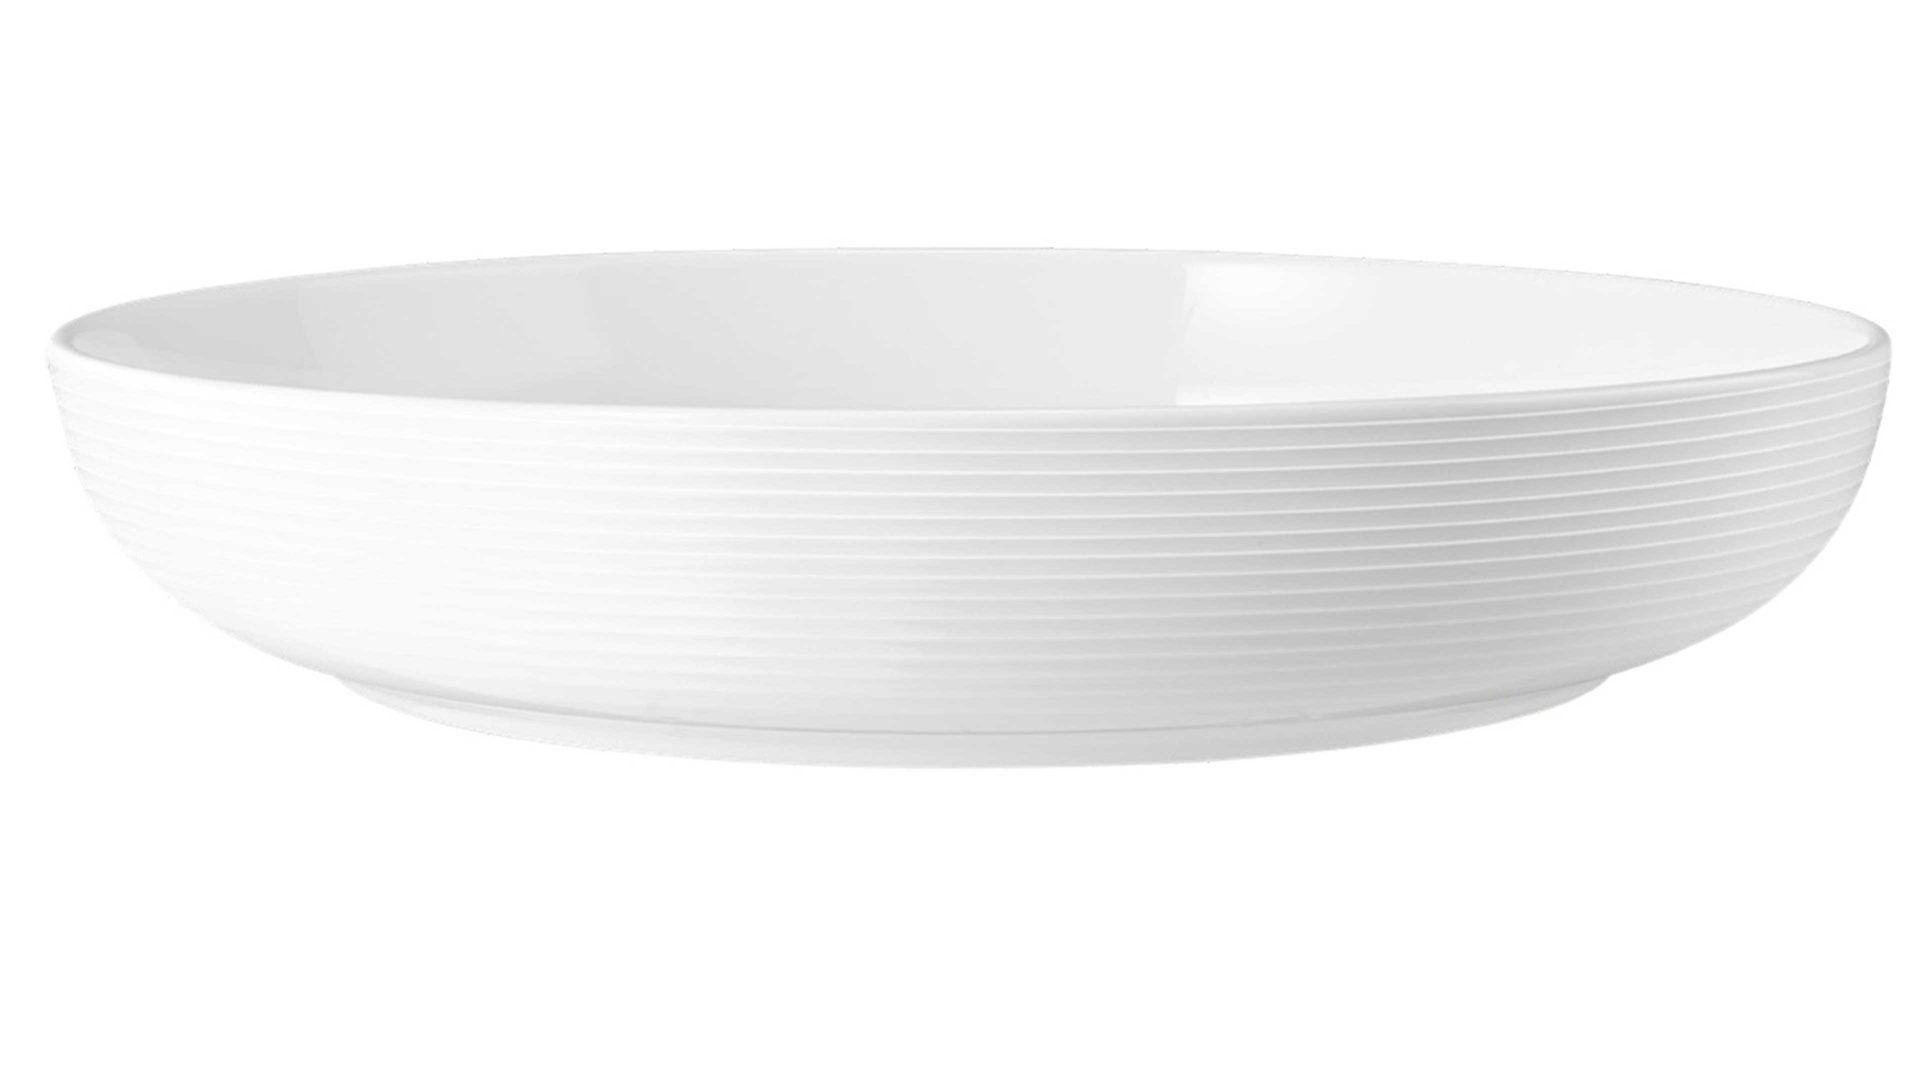 Schale Seltmann aus Porzellan in Weiß Seltmann Geschirrserie Beat 3 – Foodbowl weißes Porzellan – ca. 2270 ml